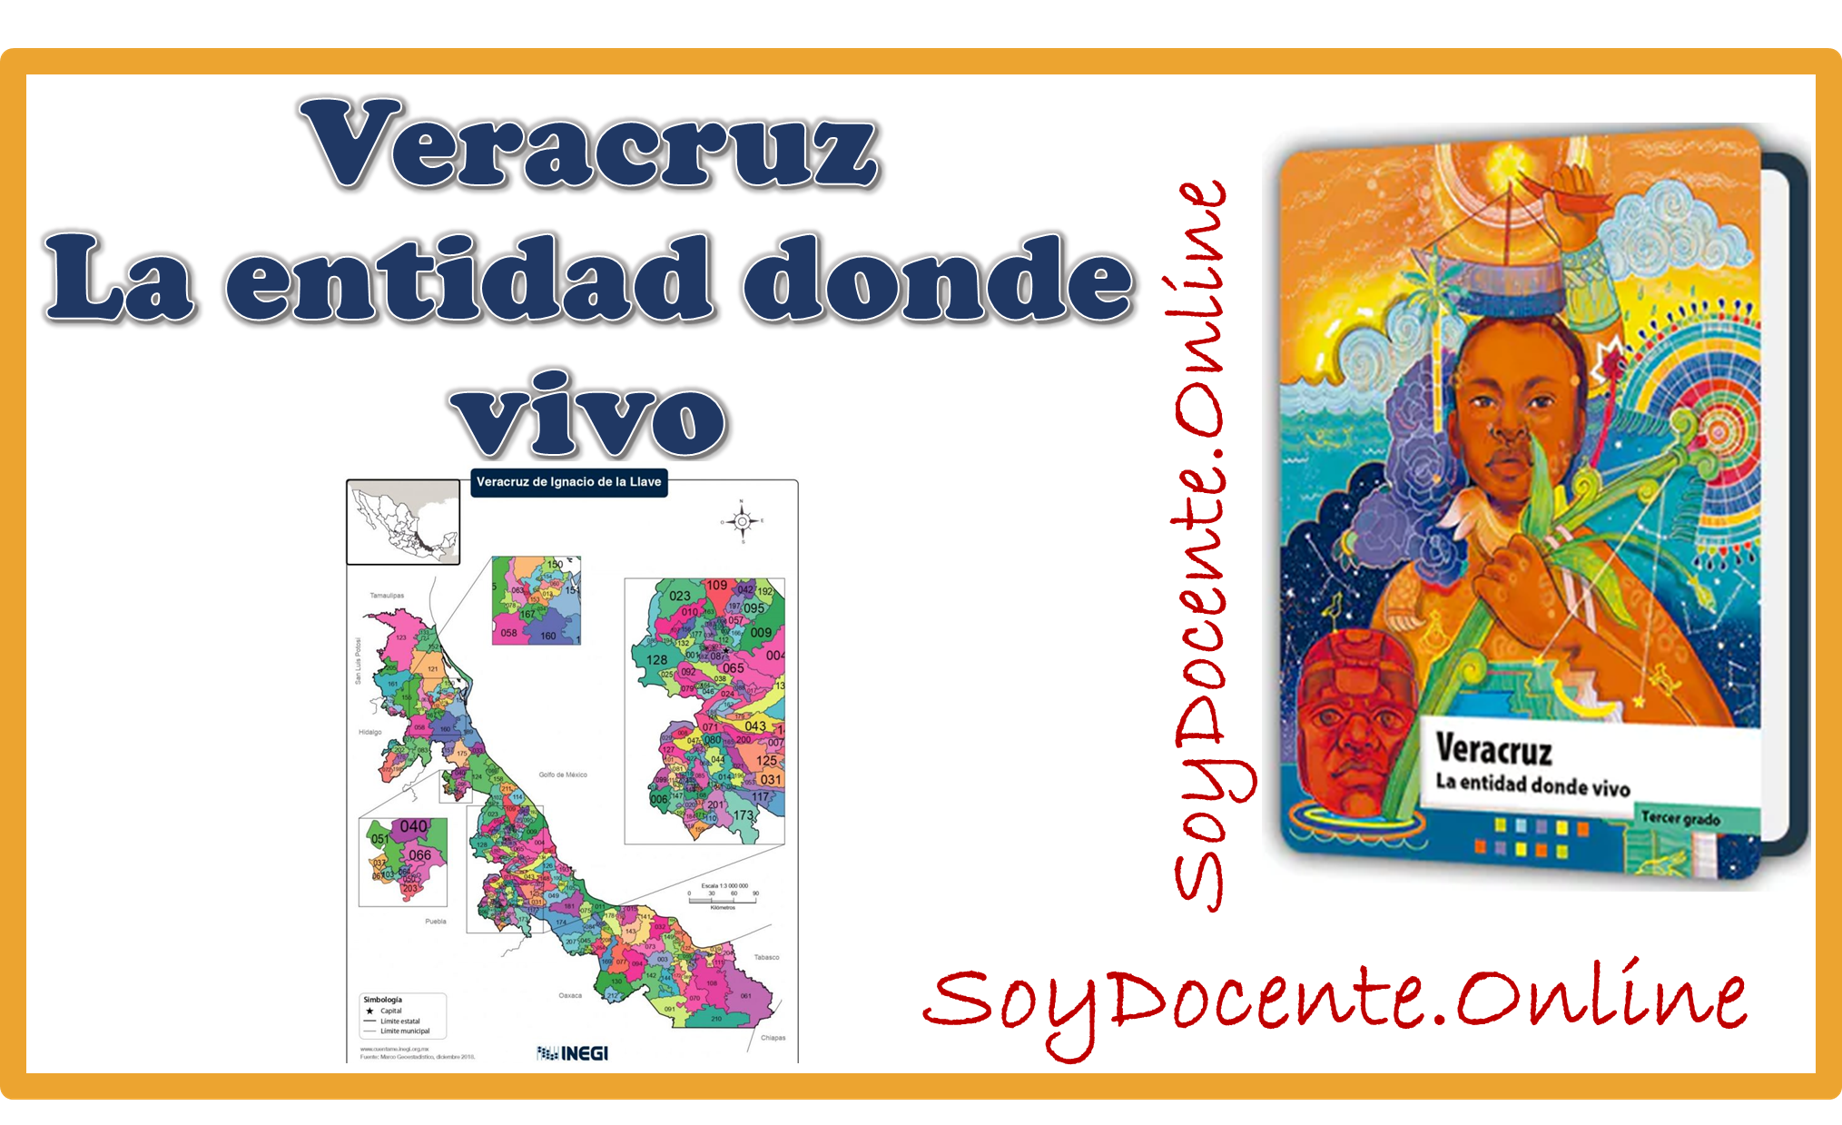 Descarga aquí el Libro de Veracruz La entidad donde vivo tercer grado de Primaria, obra de la SEP, distribuido por CONALITEG.